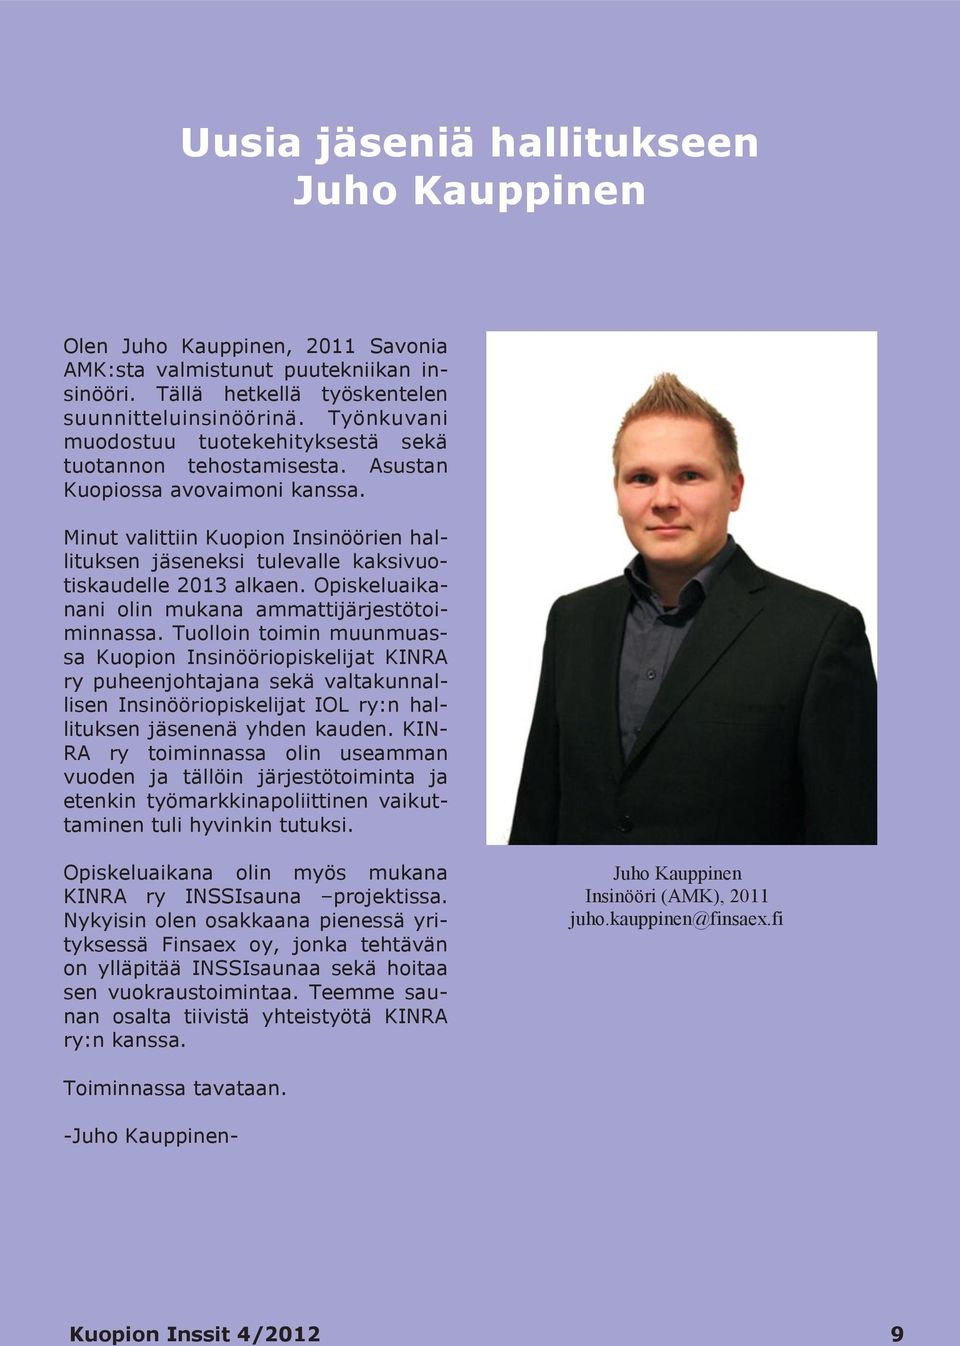 Minut valittiin Kuopion Insinöörien hallituksen jäseneksi tulevalle kaksivuotiskaudelle 2013 alkaen. Opiskeluaikanani olin mukana ammattijärjestötoiminnassa.